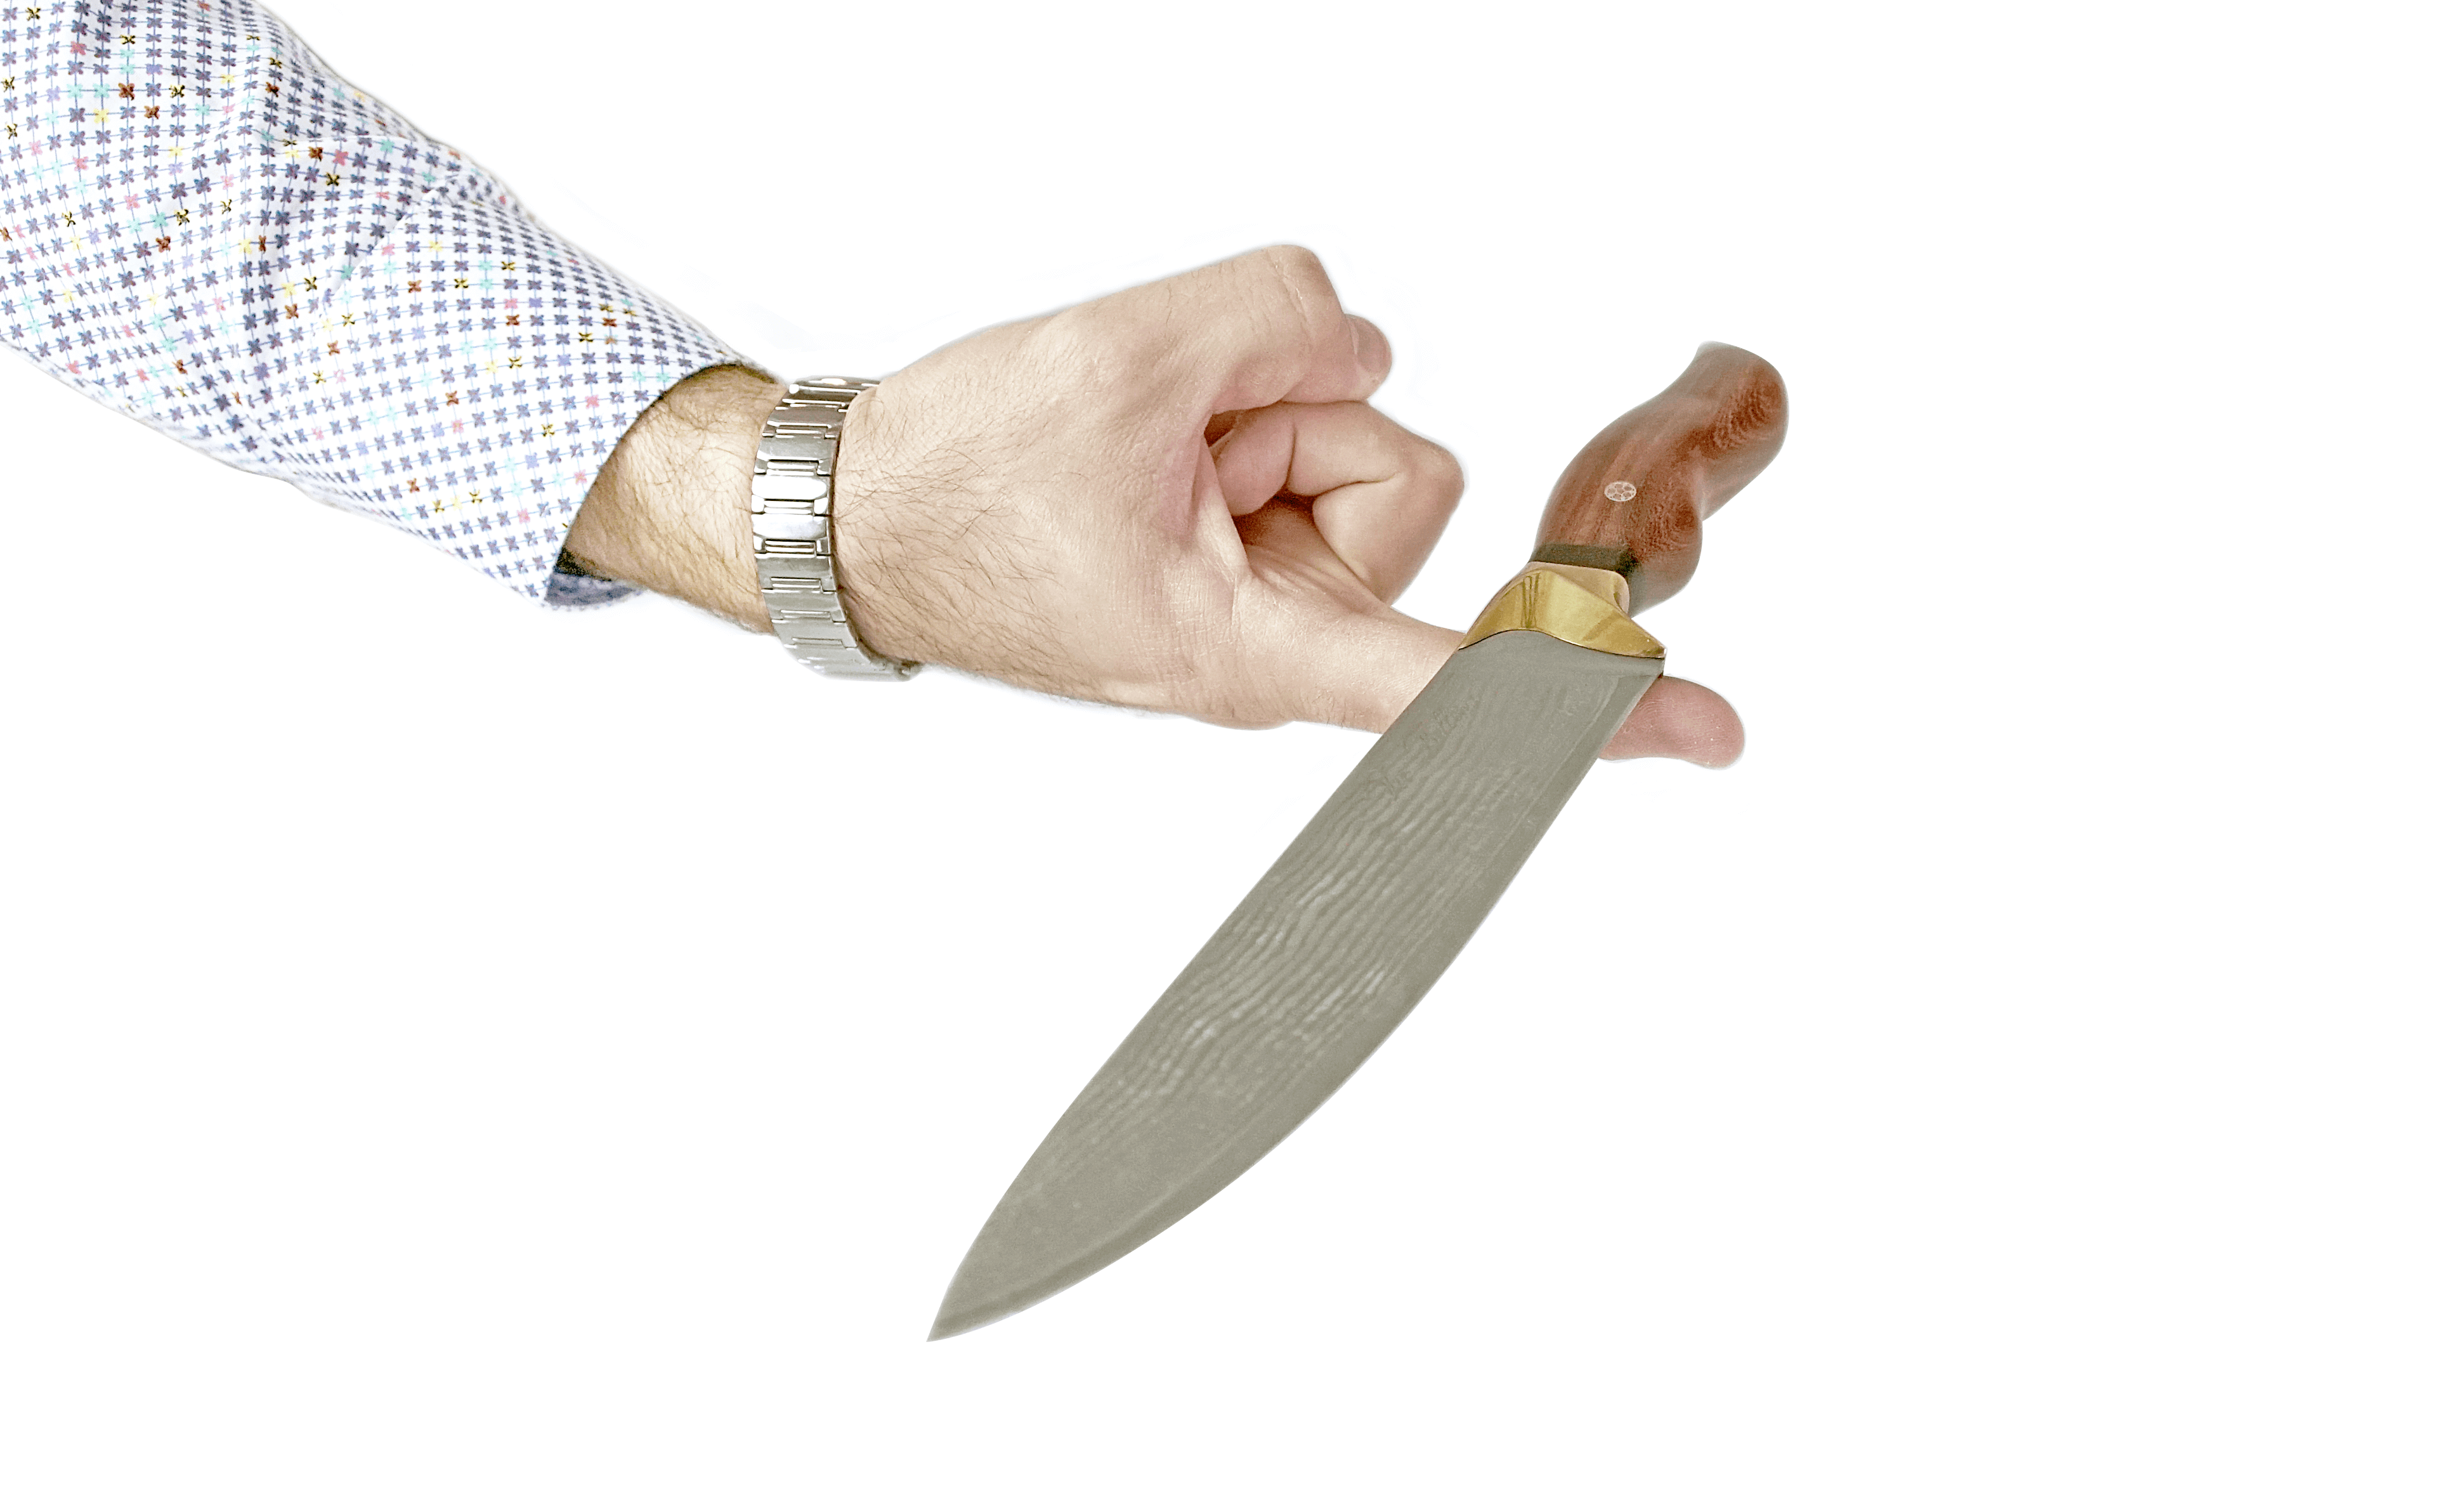 शेफ का चाकू खरीदने से पहले जानने योग्य 9 बातें